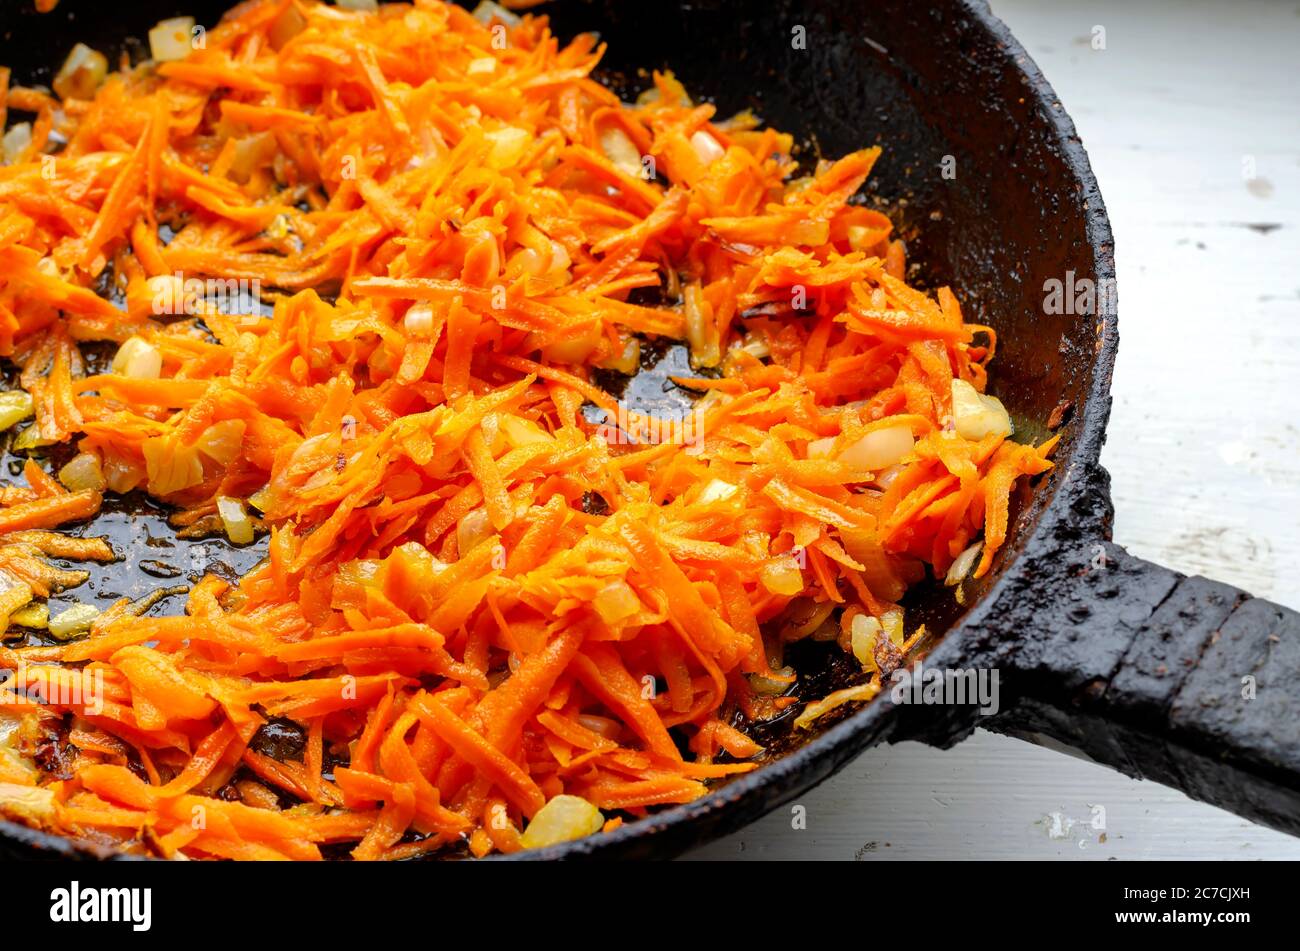 Morceaux d'oignons frits et de carottes dans une poêle. Les oignons coupés en dés et les carottes râpées sont frits sur le poêle. Cuisine. Plats faits maison. Mise au point sélective Banque D'Images